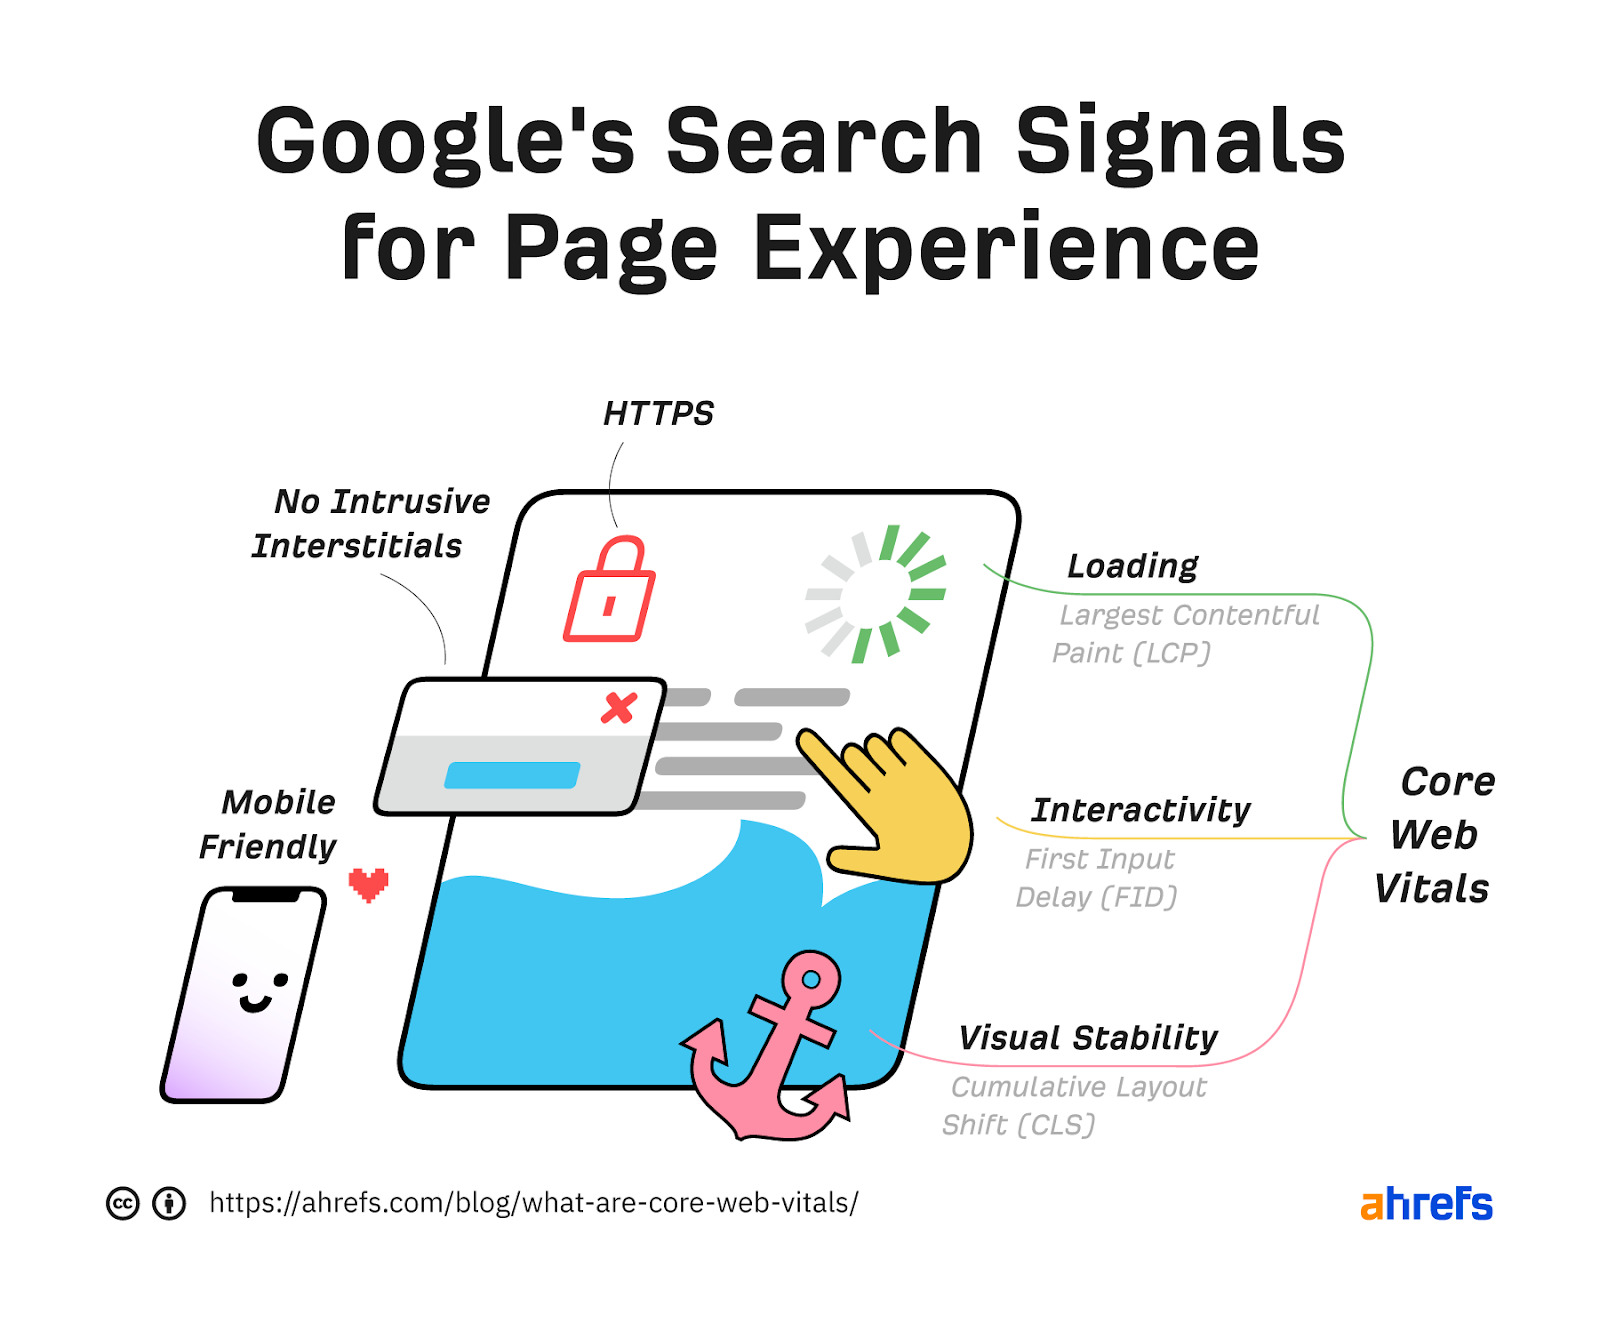  Les signaux de Page Experience de Google incluent le https, l’absence d’interstitiel intrusif, le responsive et les Core Web Vitals.